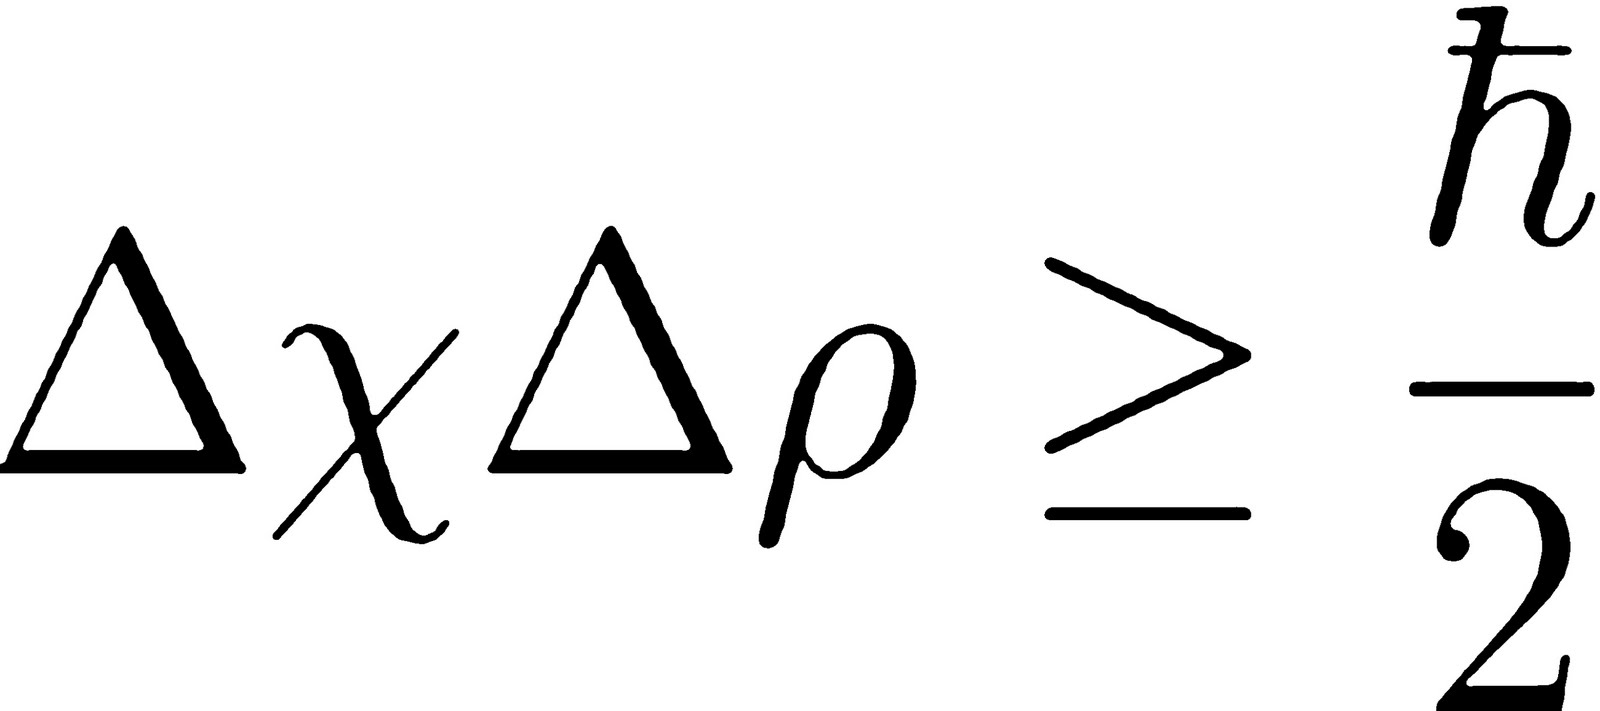 heisenberg uncertainty principle in hindi